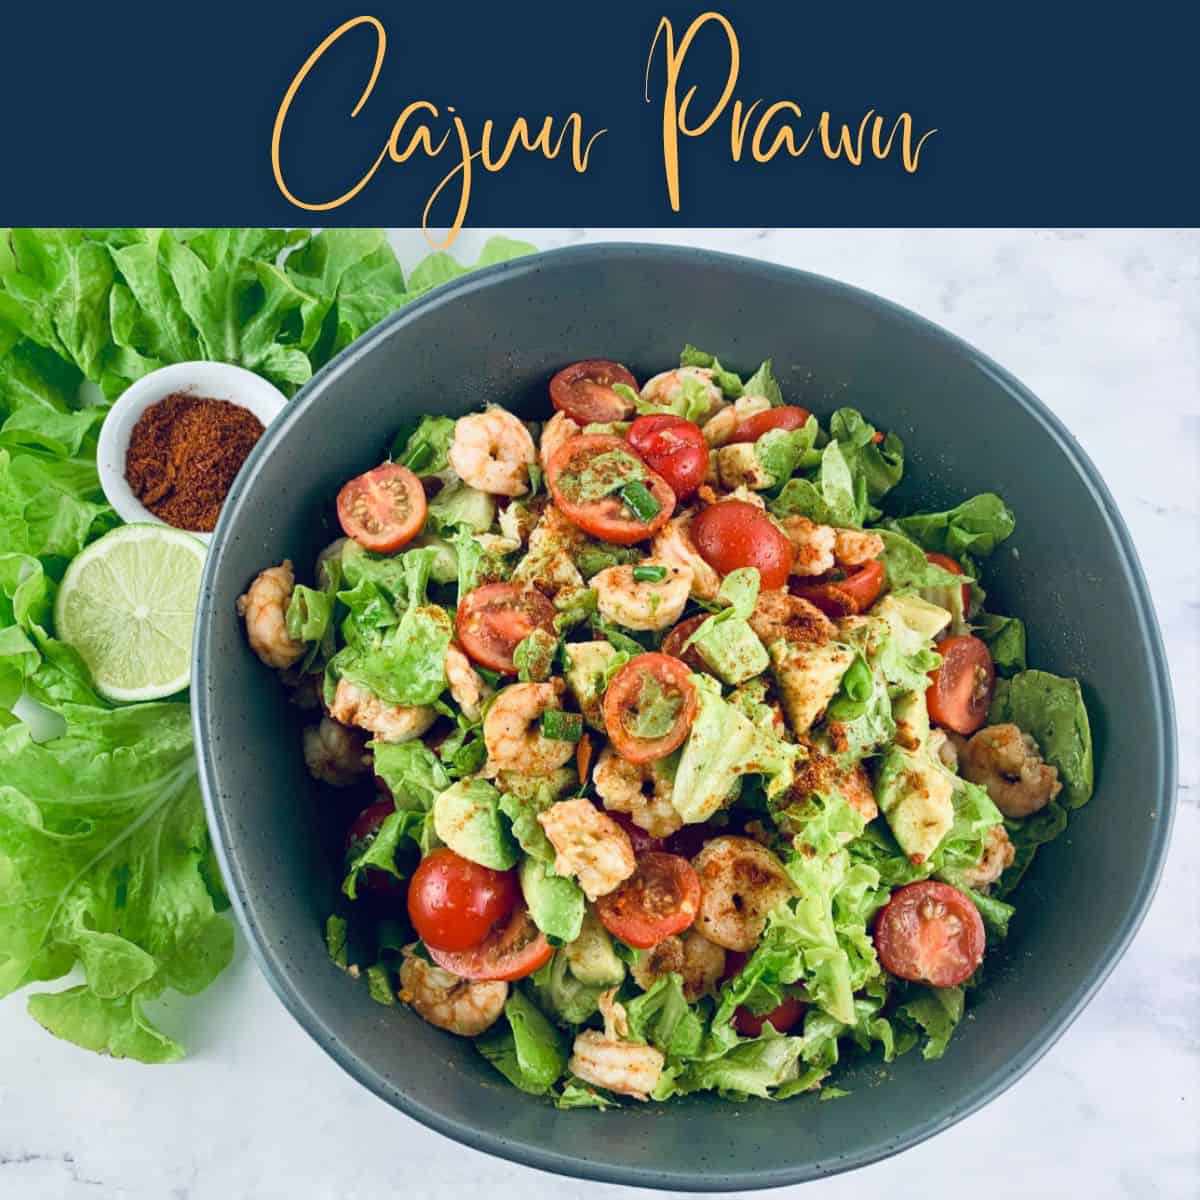 Cajun Prawn salad with text overlay.